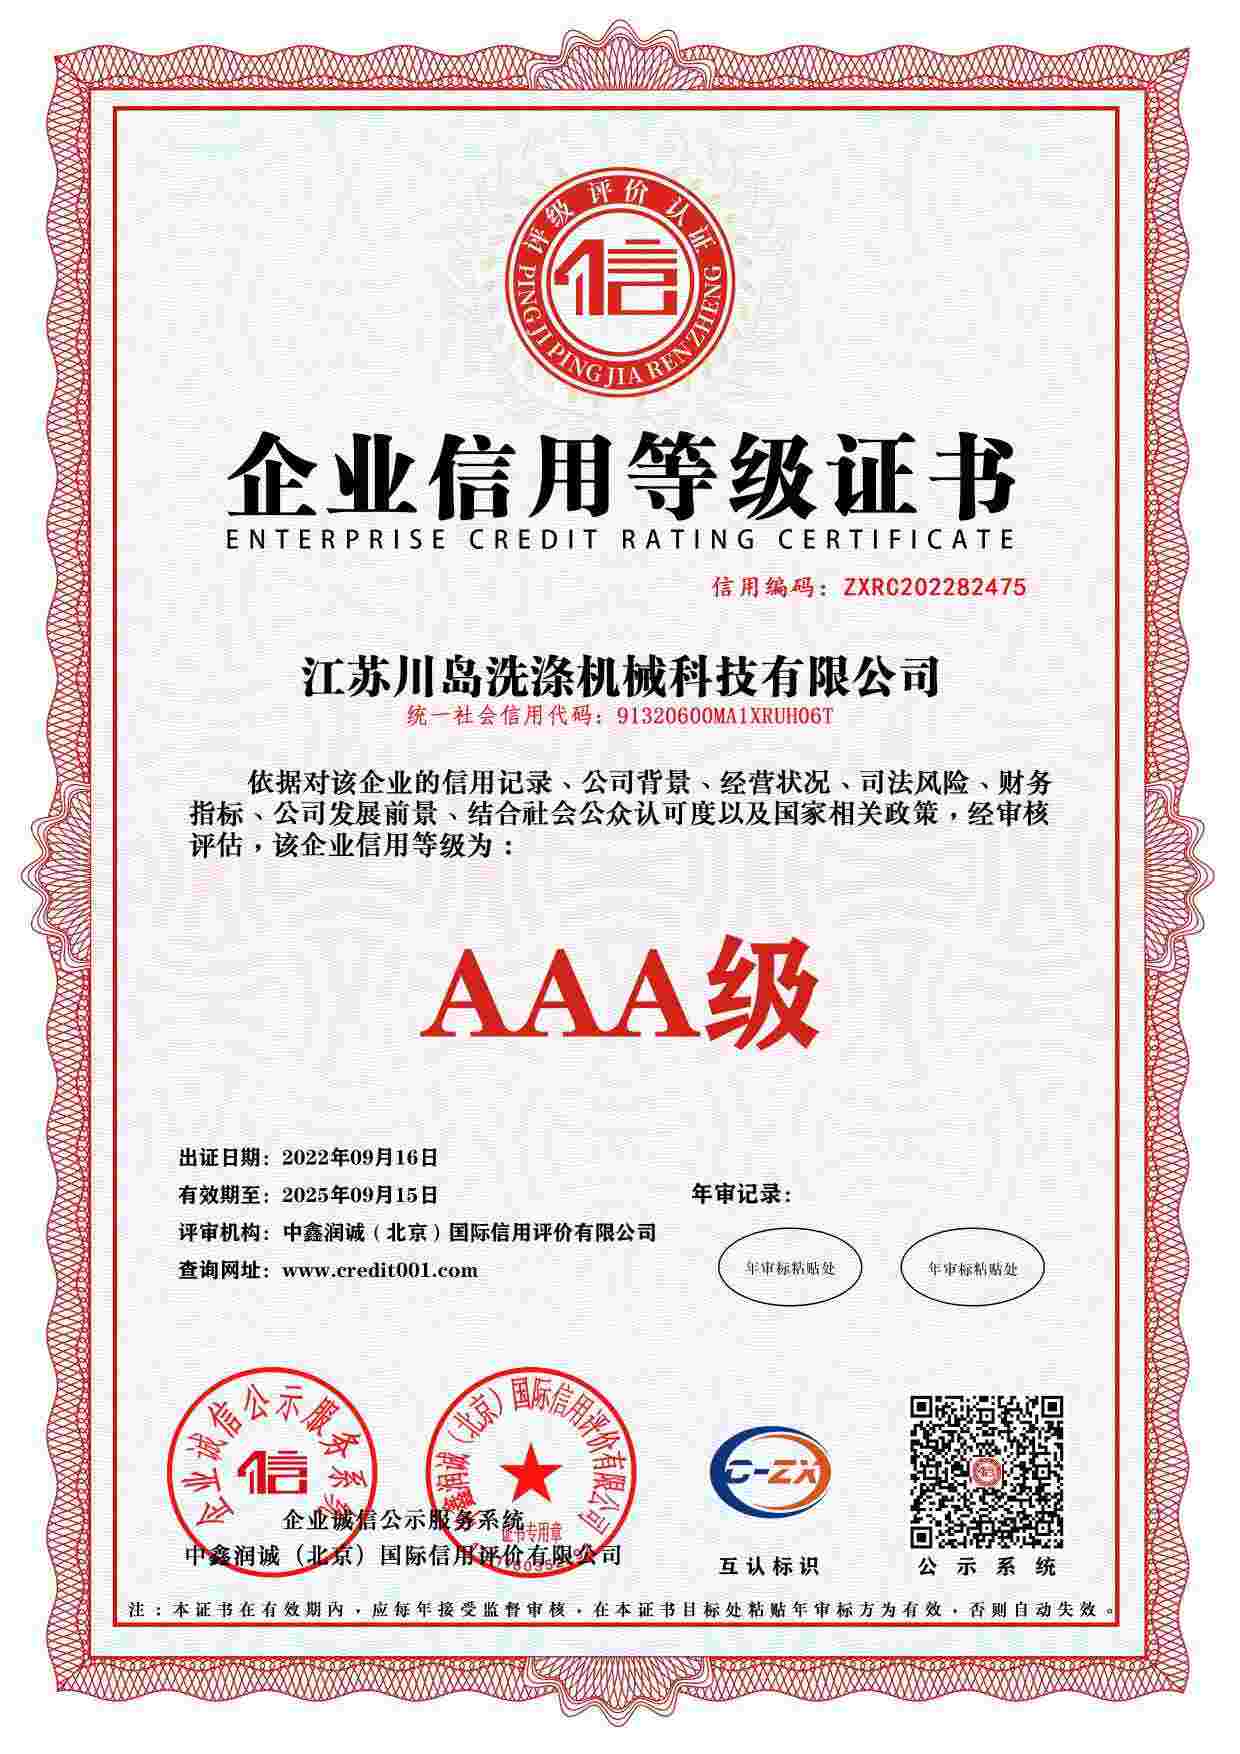 Сертификат кредитного рейтинга предприятия (1)